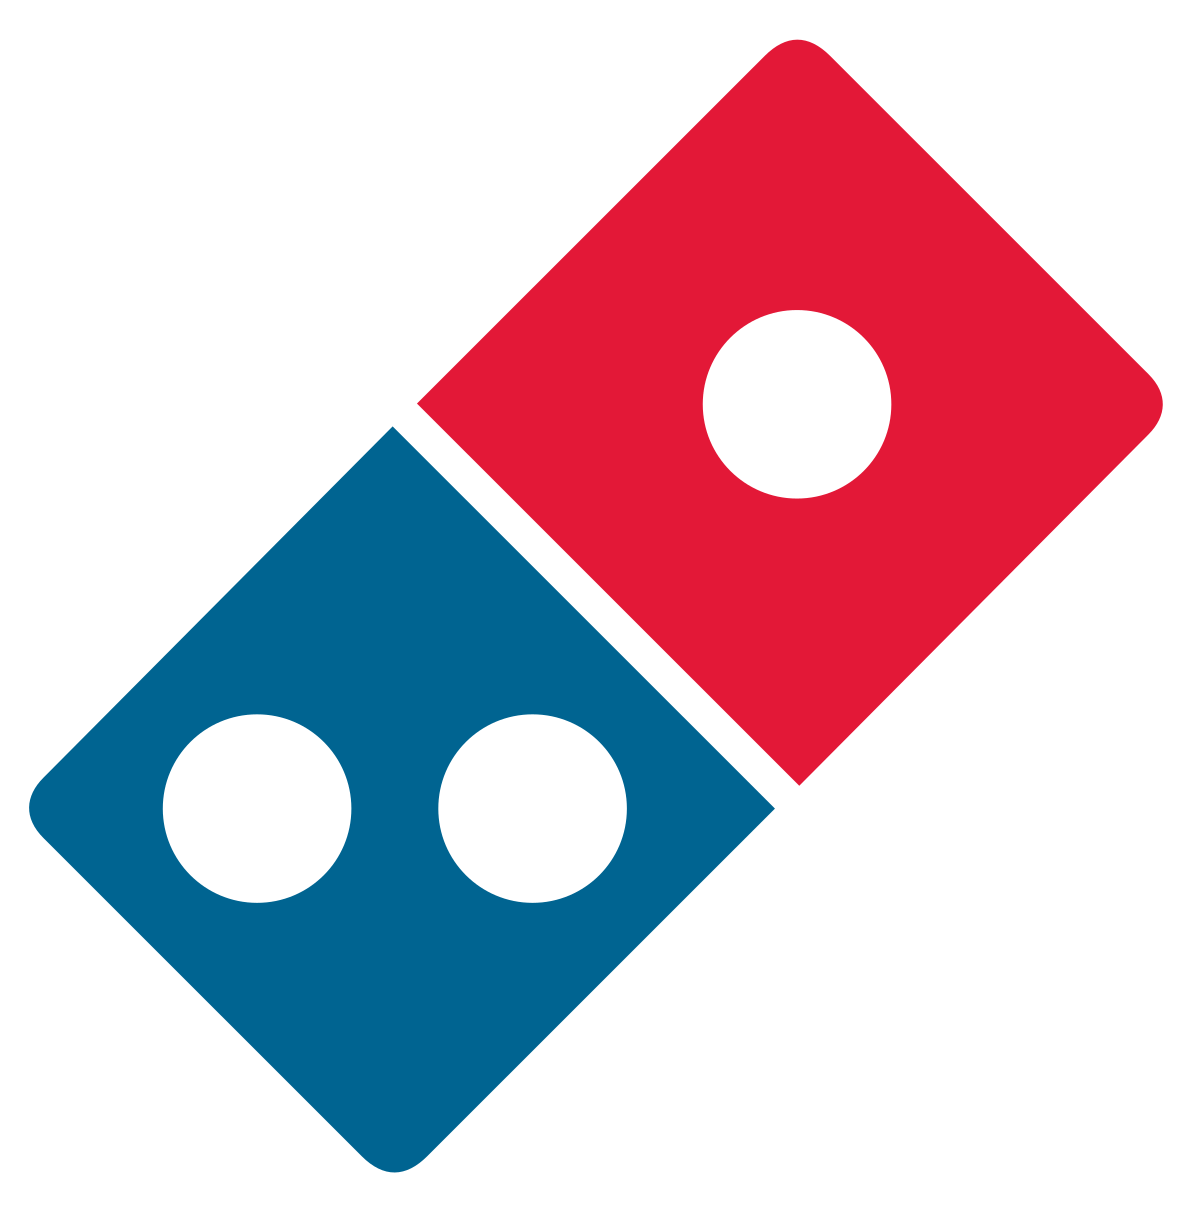 Old Domino's Pizza Logo - Domino's Pizza